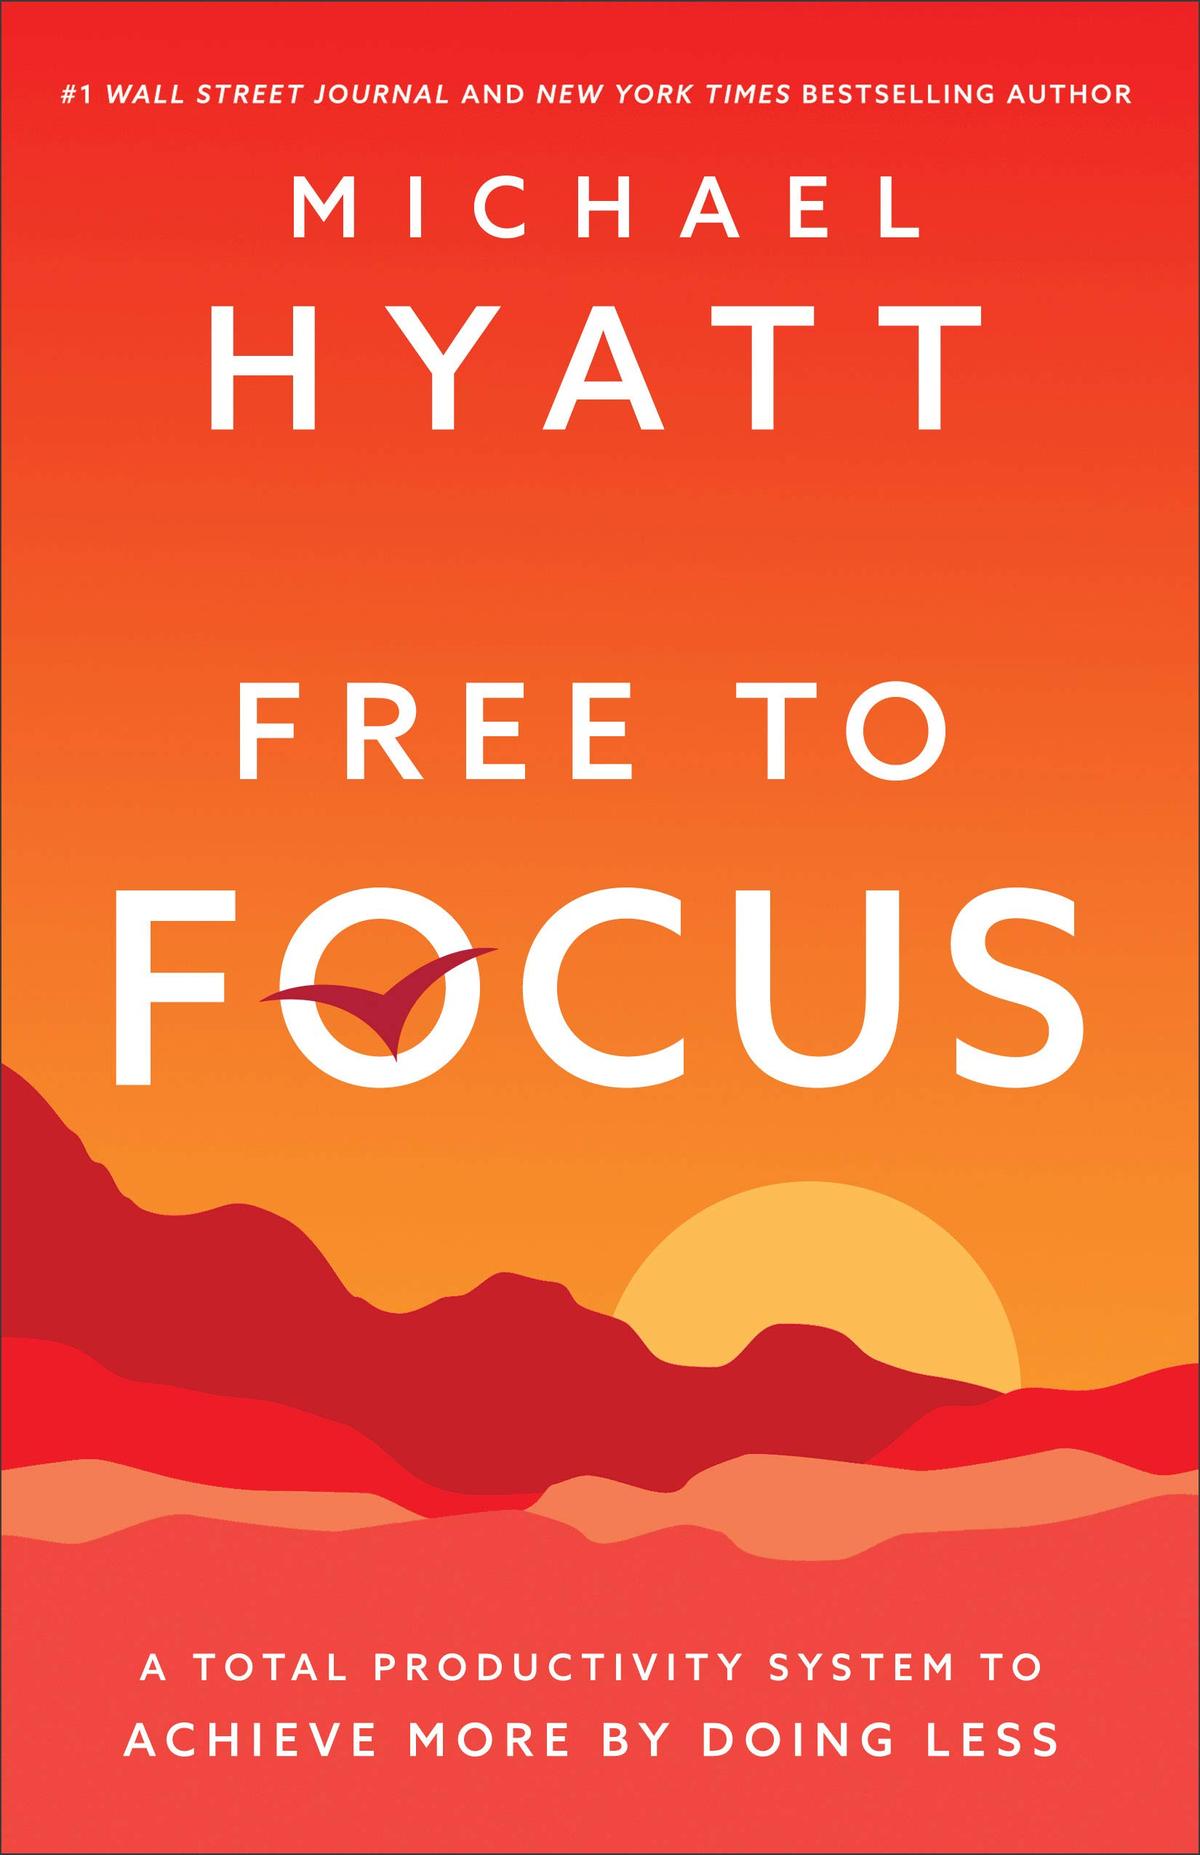 "Free to Focus" by Michael Hyatt.